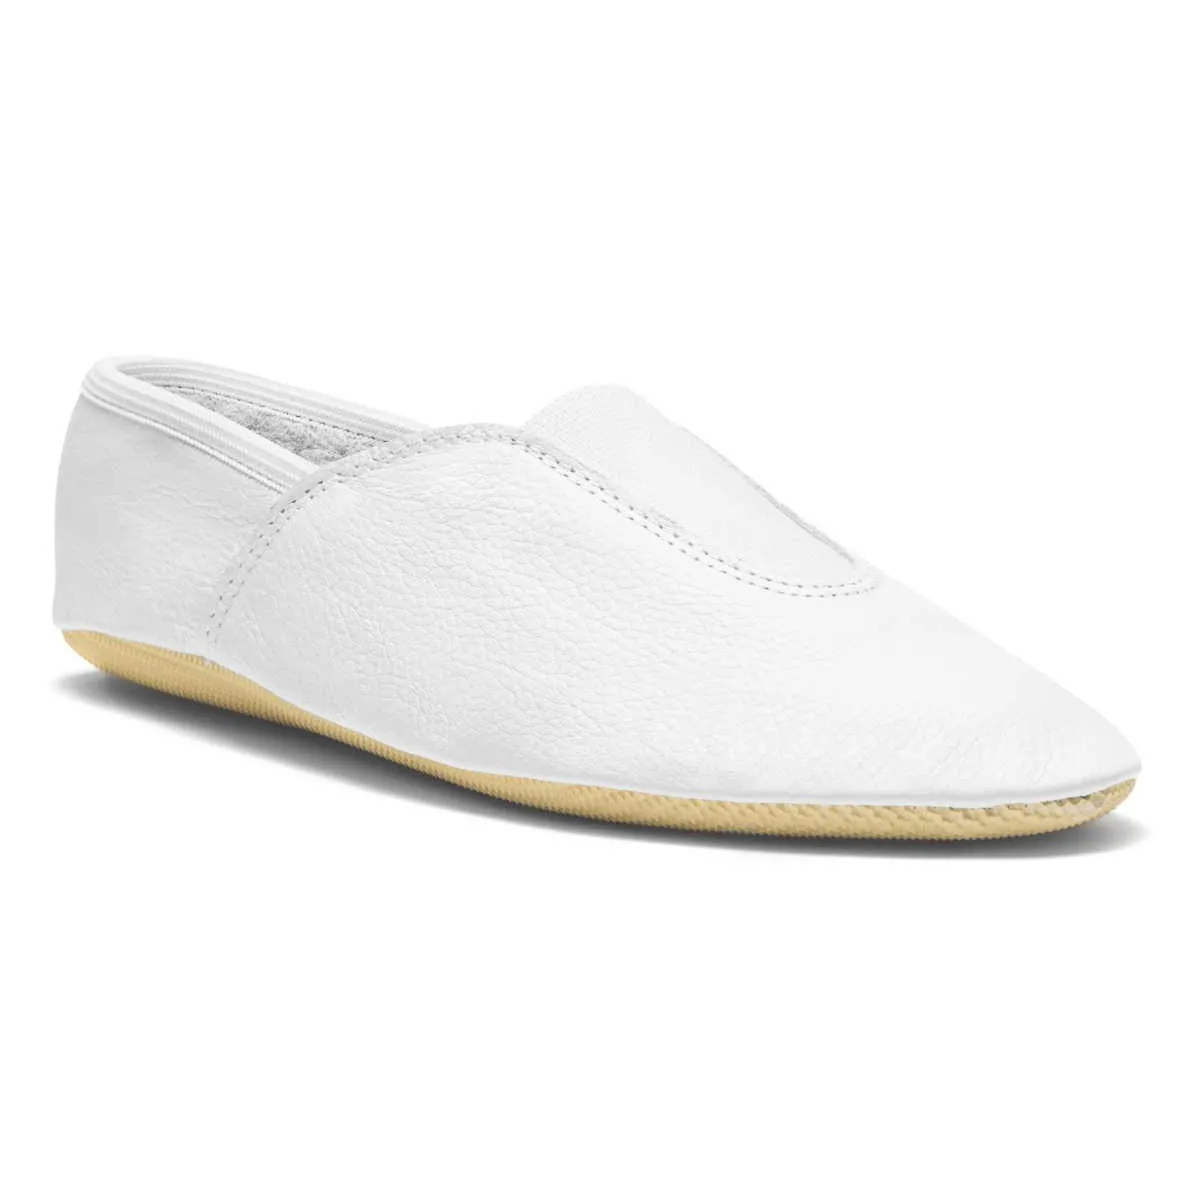 Chaussons de gymnastique blanc - Chaussons de tapis Chaussons pieds nus